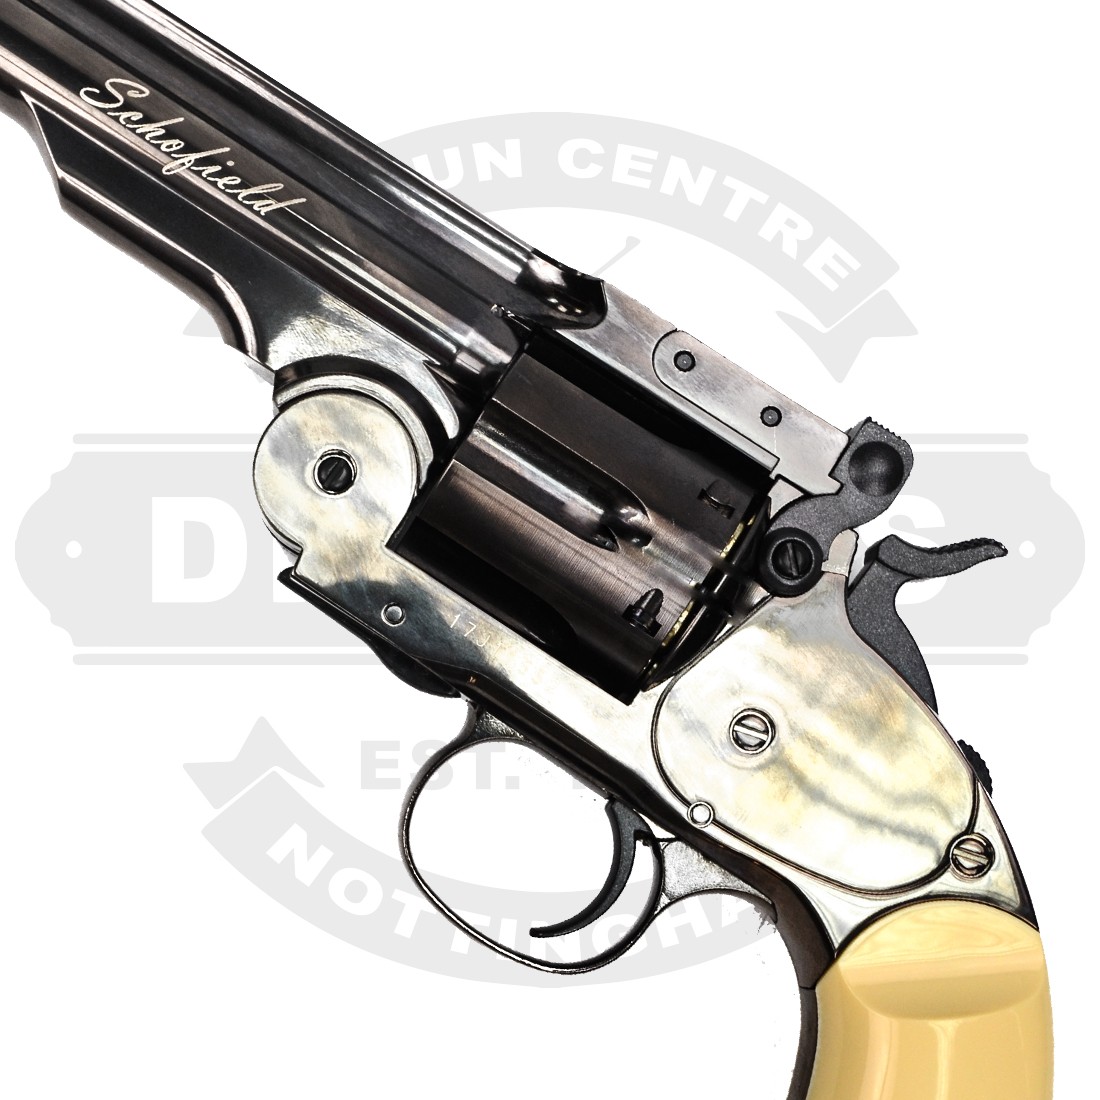 ASG Schofield 6 Silver CO2 Revolver